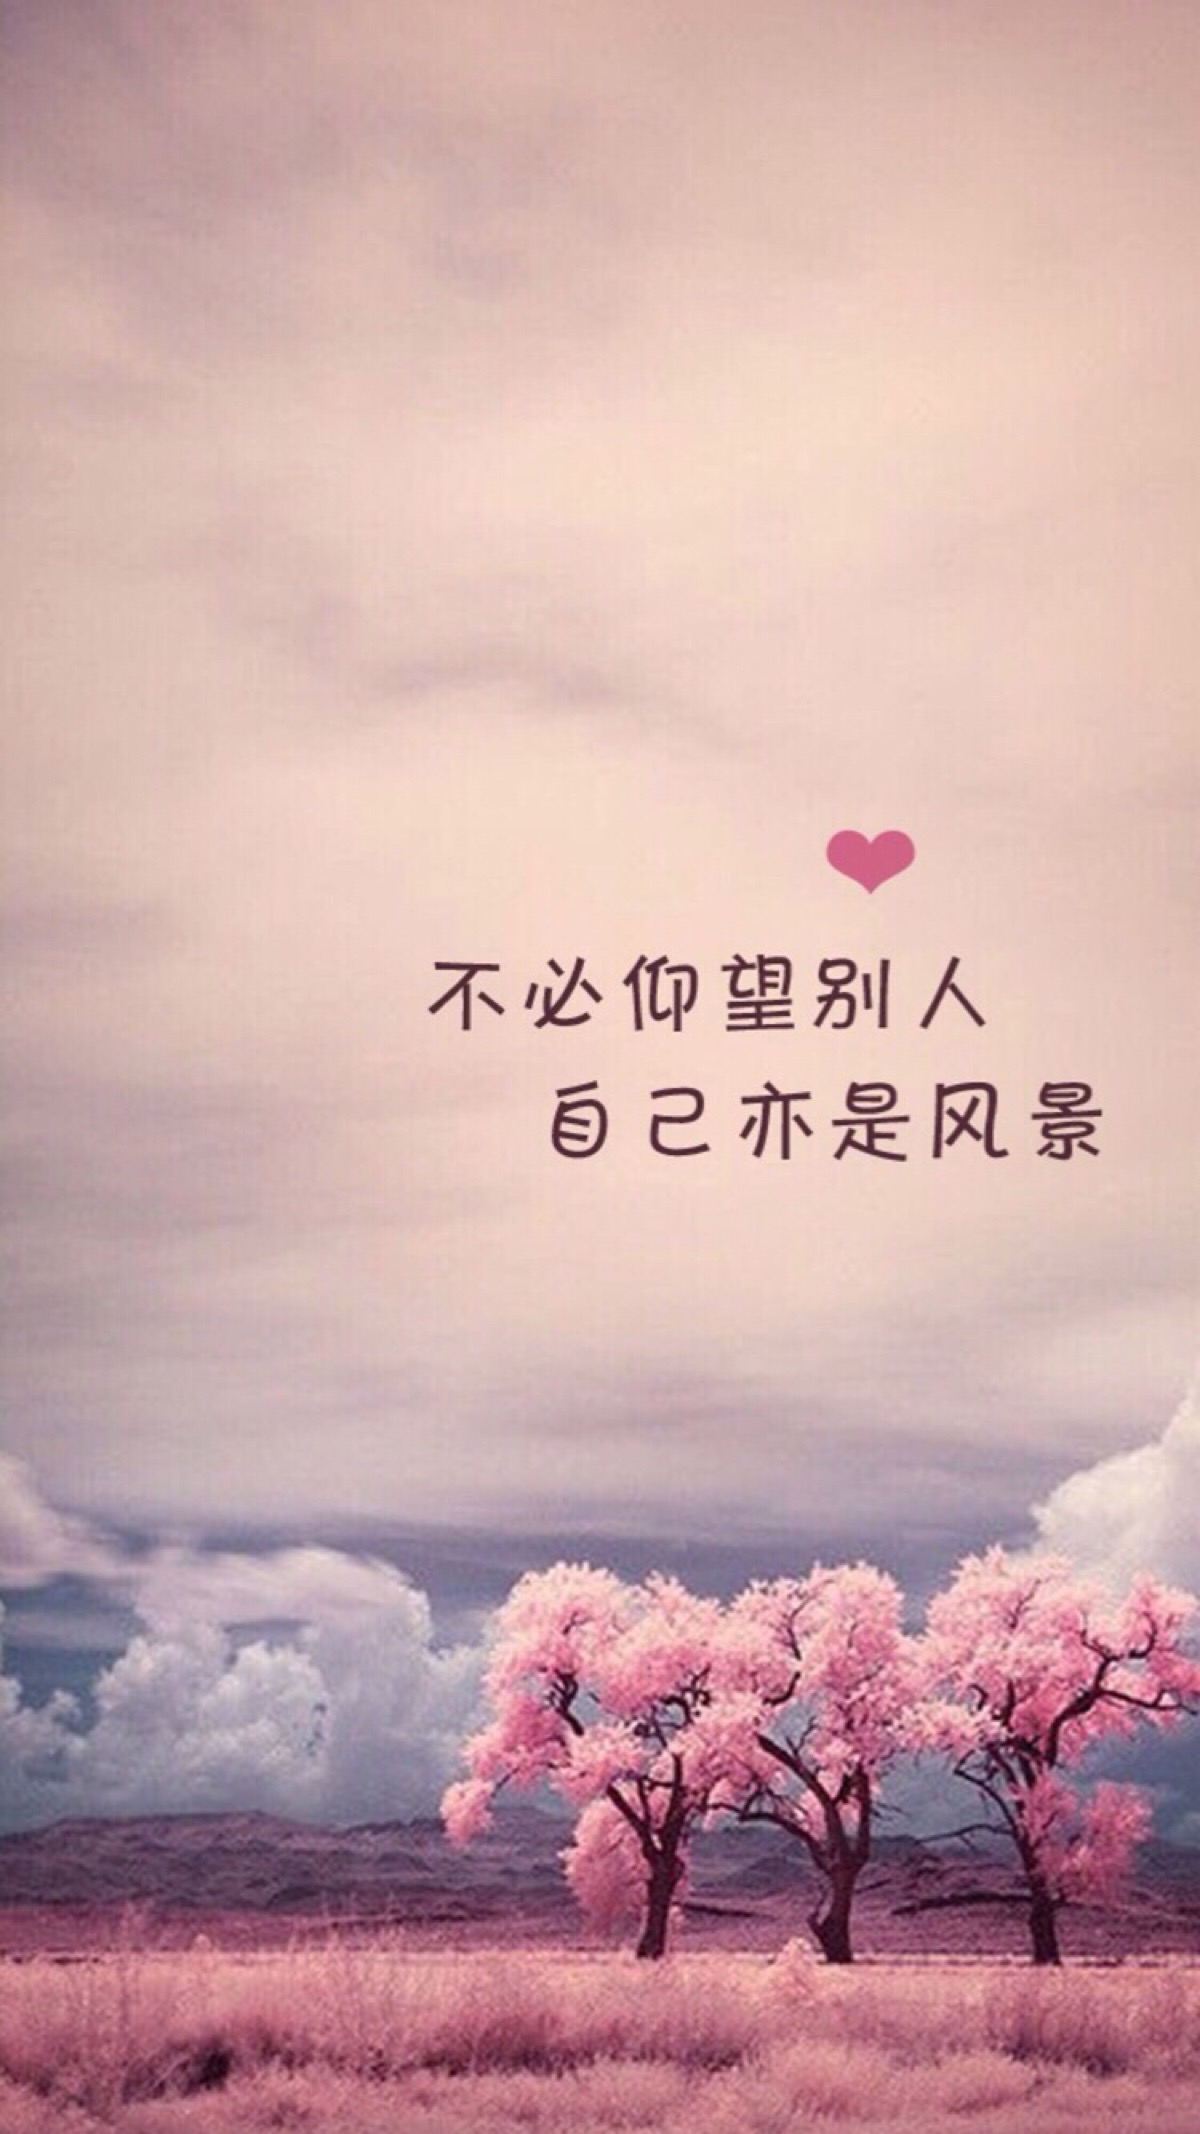 文字图片#心情语录#伤感#手机壁纸#小清新"文艺"告白